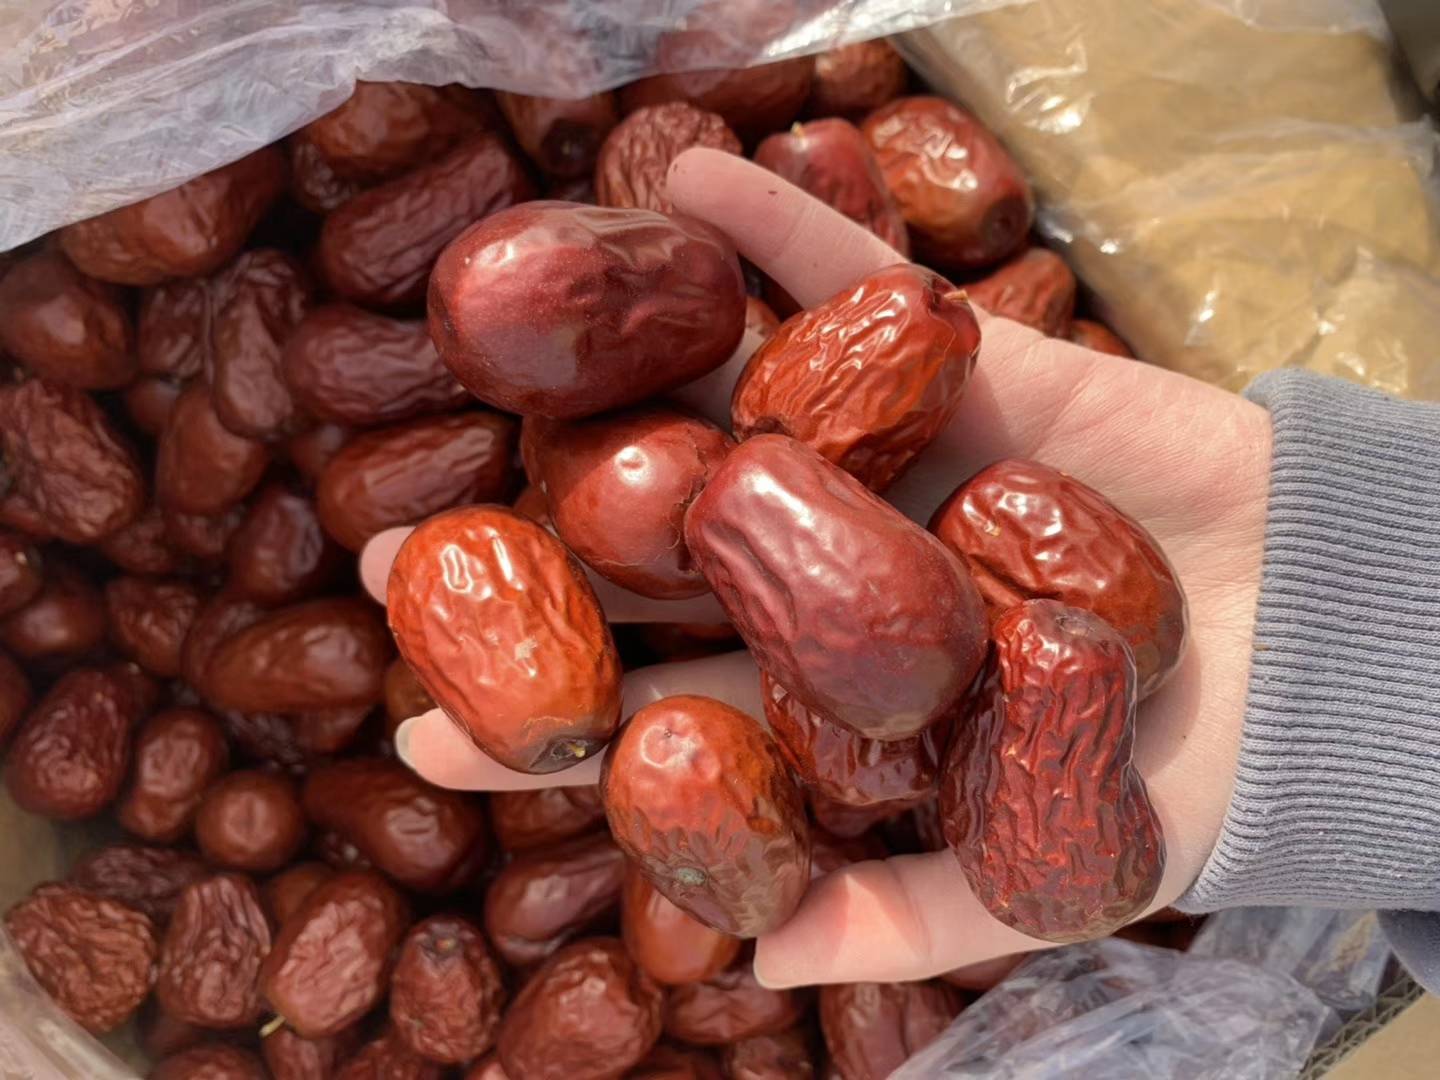 新疆红枣供应，安箱子发货的，有特级，一级，二级的品种，需要的可以联系吧，15769030259